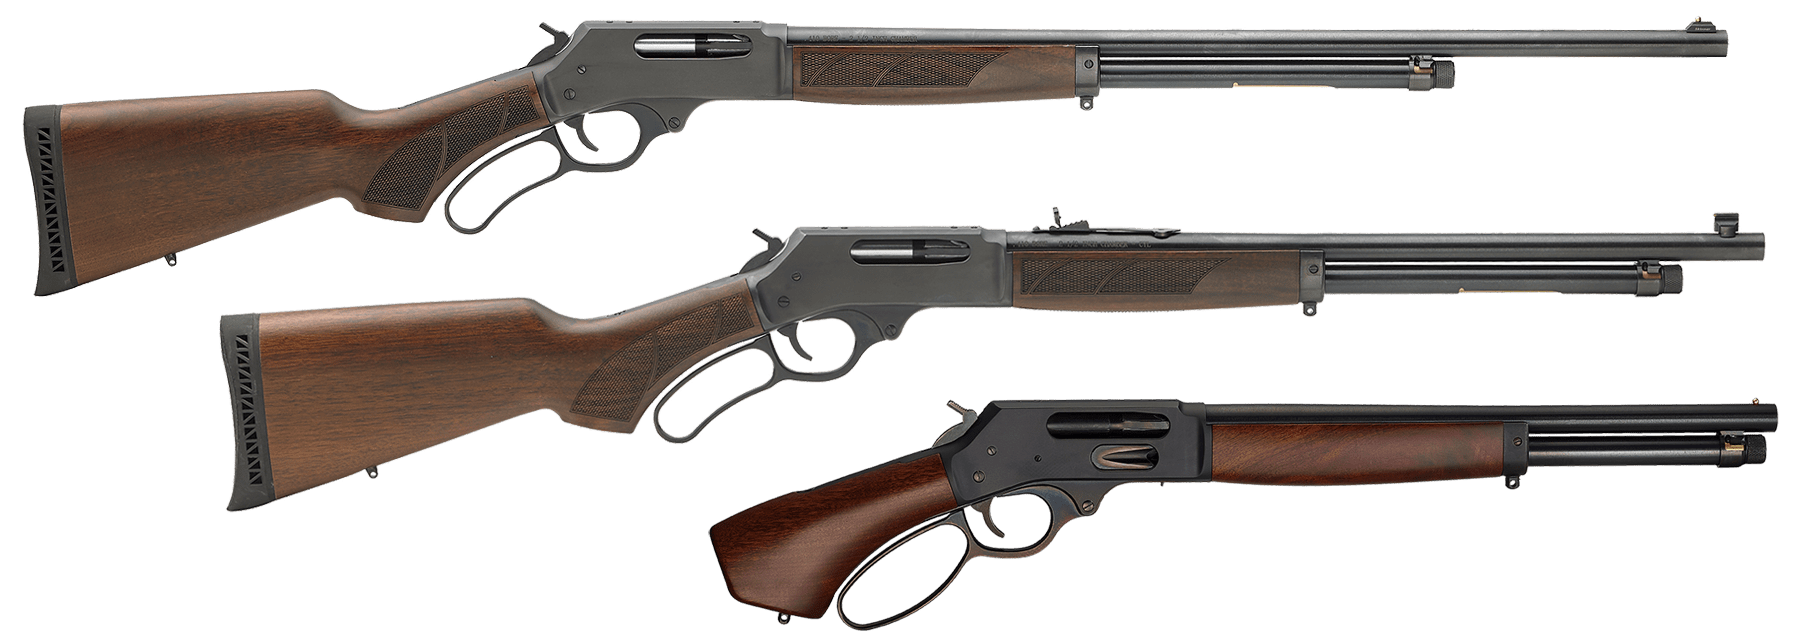 H018 Shotguns & Axe Models